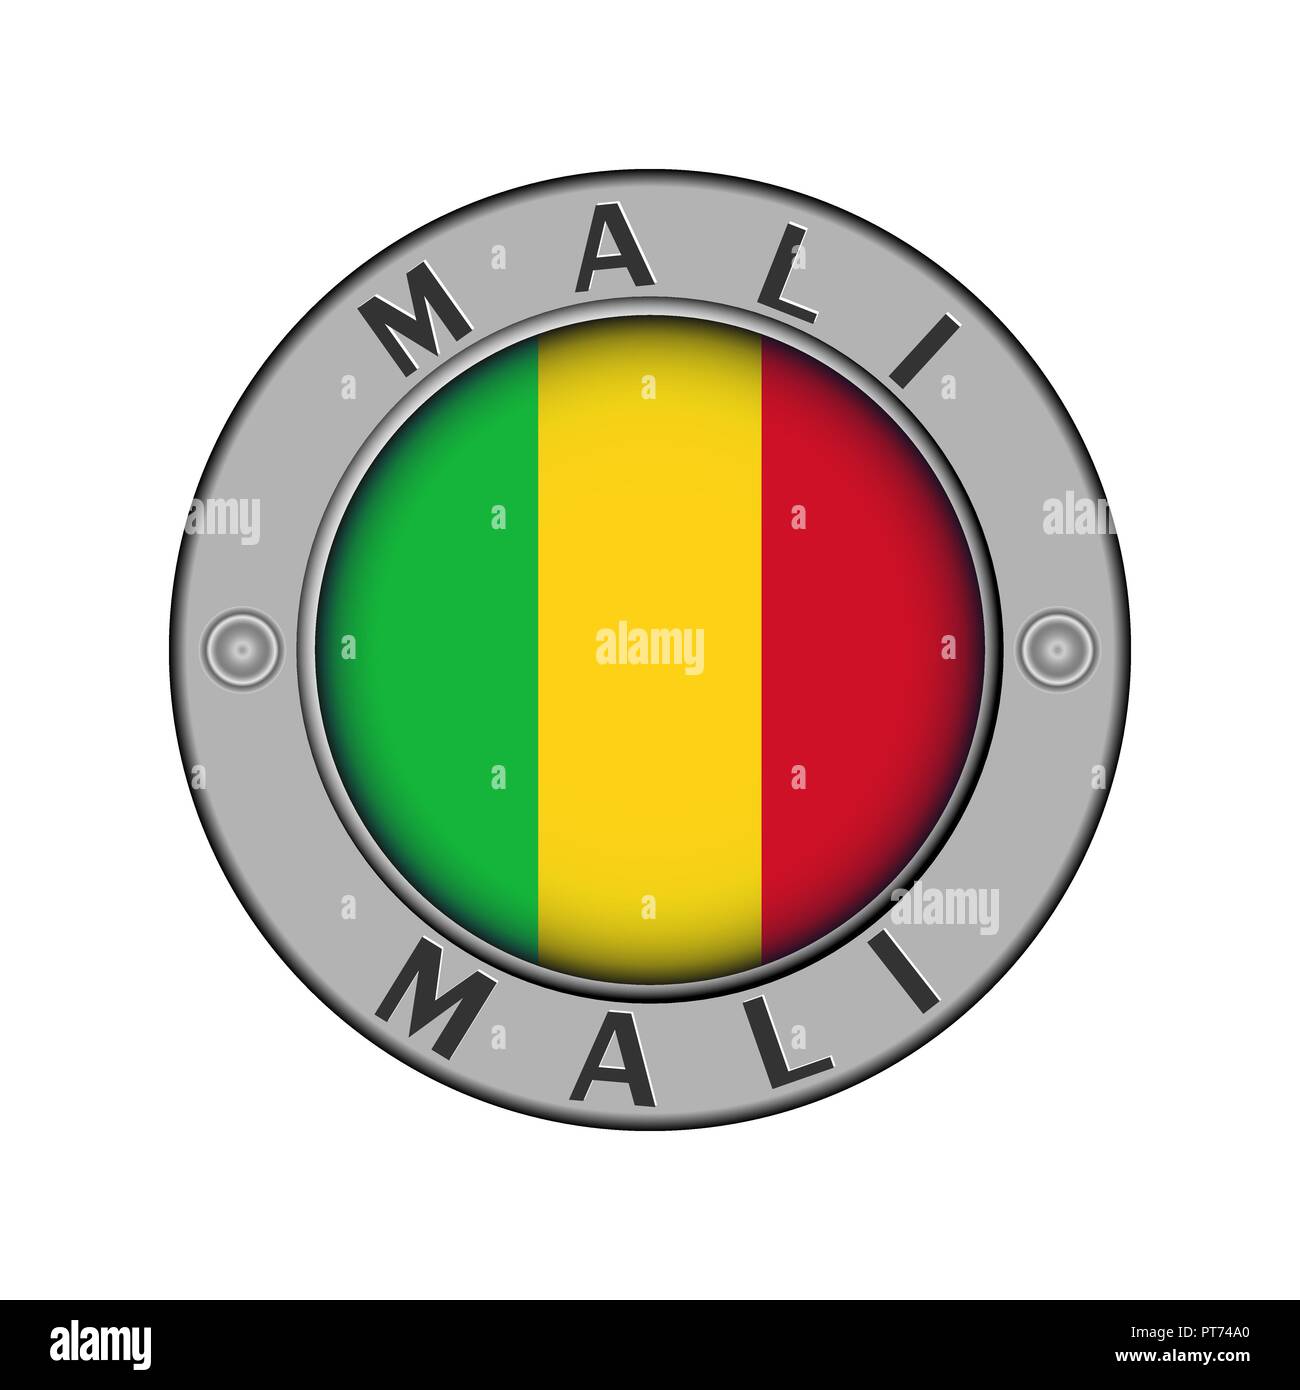 Rotondo di metallo medaglione con il nome del paese di Mali e un indicatore rotondo nel centro Illustrazione Vettoriale